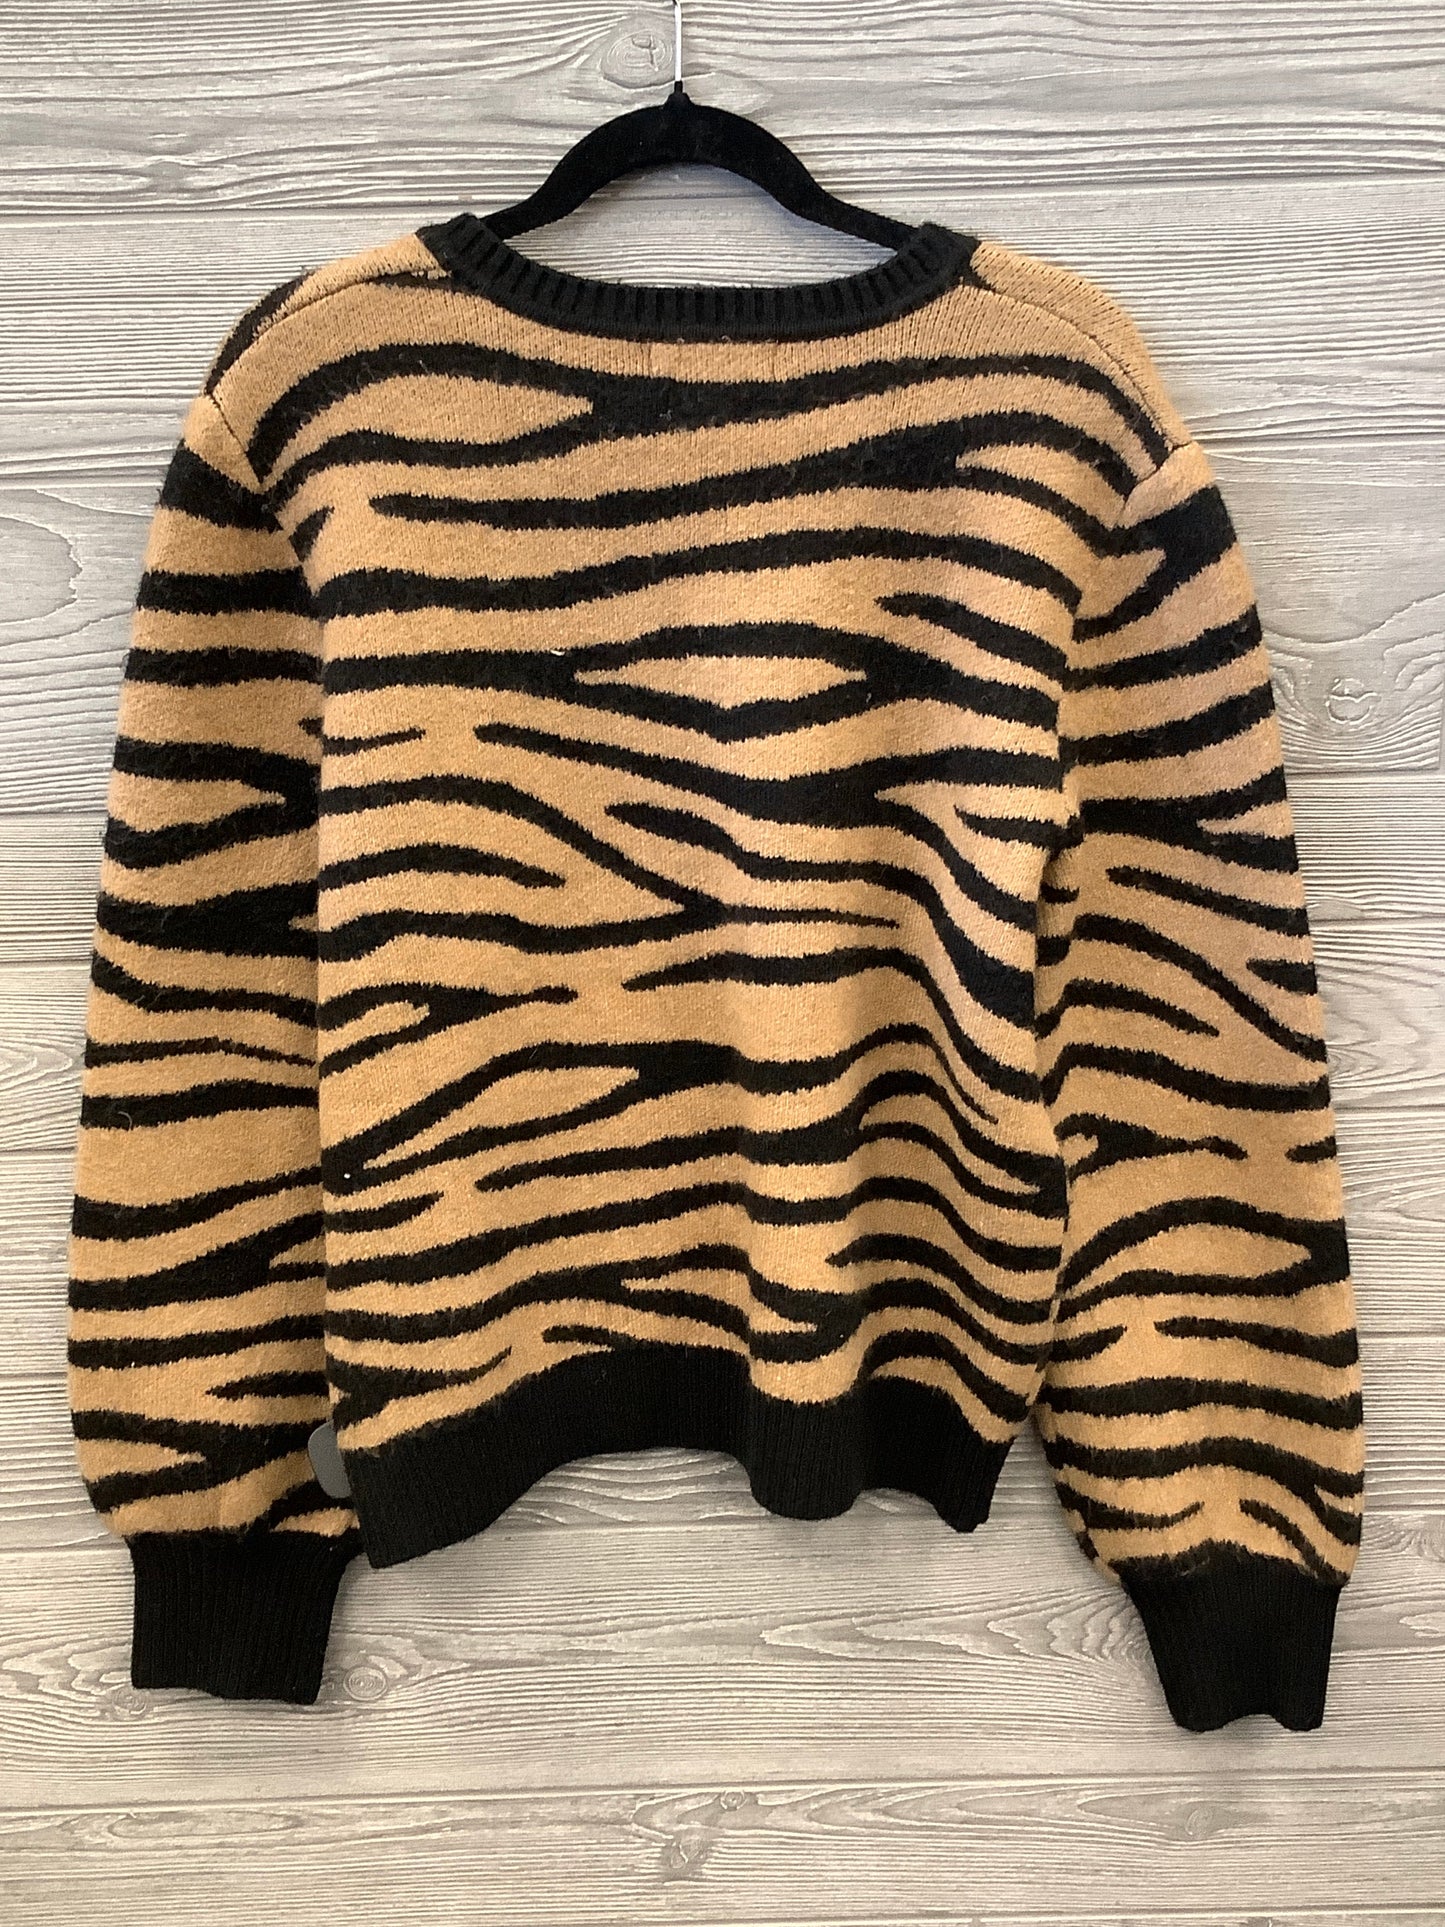 Sweater By Karen Kane  Size: Xl